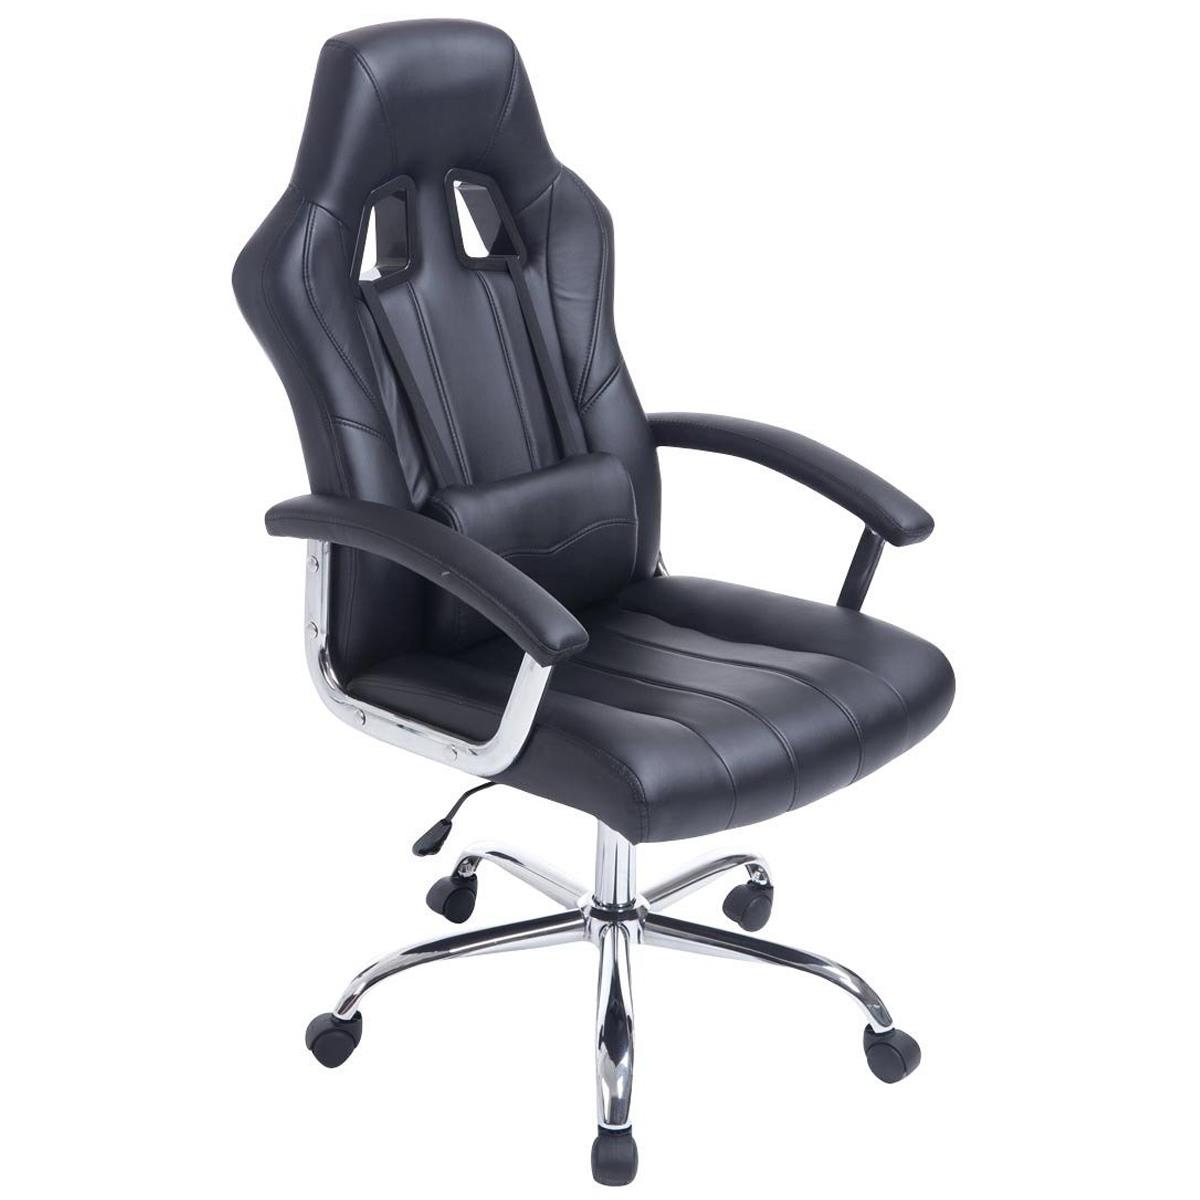 Gaming-Stuhl INDOS, sportliches Design, hoher Komfort, Metallfußkreuz, Lederbezug, Farbe Schwarz